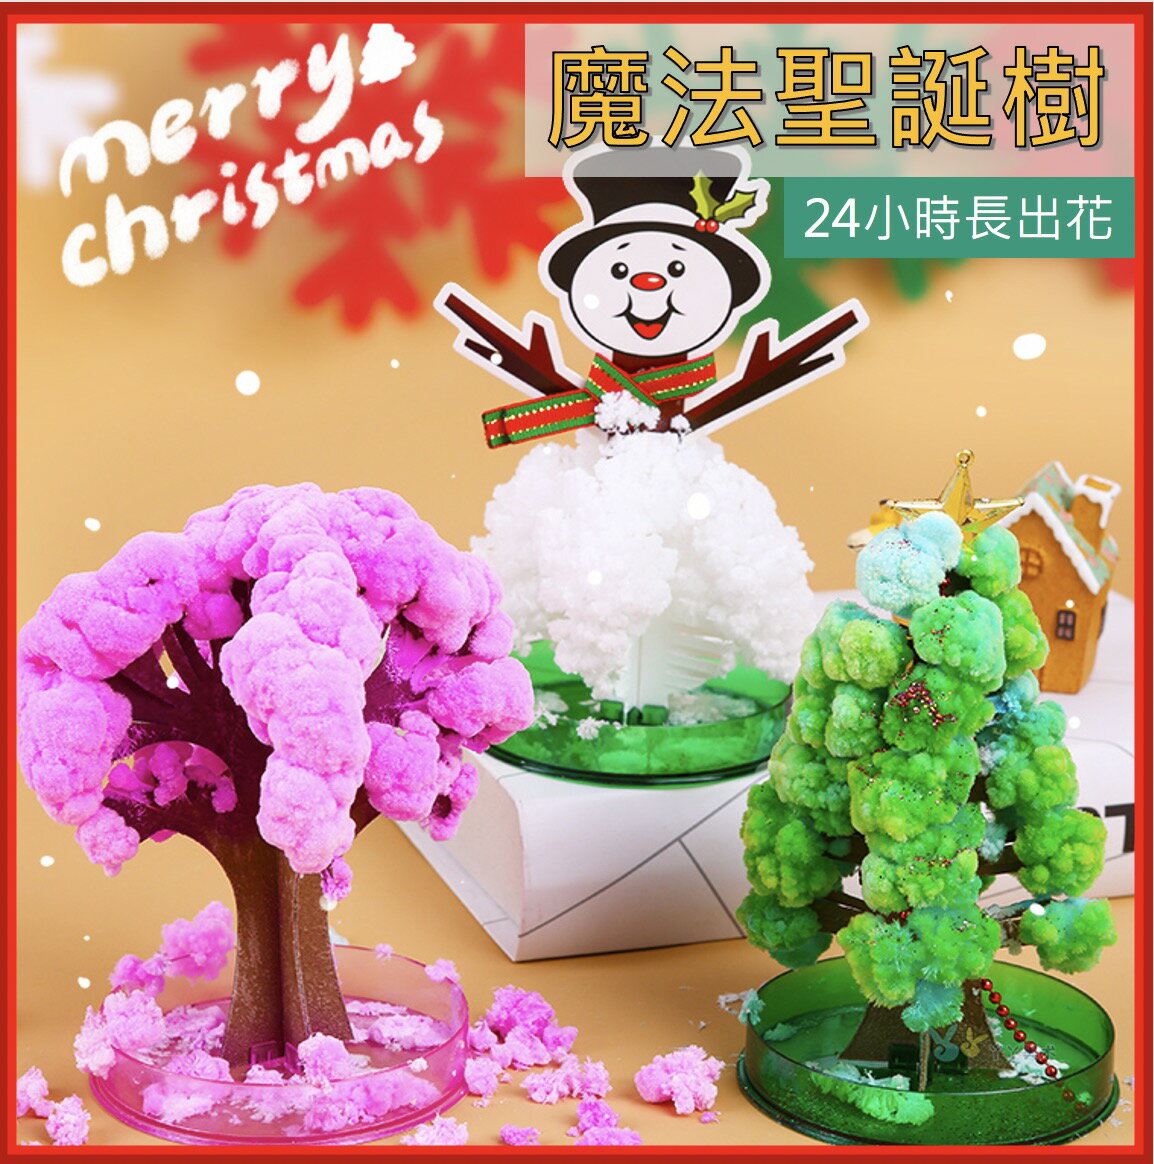 聖誕節必備 開花紙樹 聖誕紙數 雪樹 聖誕禮物 交換禮物 跨年禮物 魔幻樹 大型聖誕樹開花 紙樹 聖誕樹開花